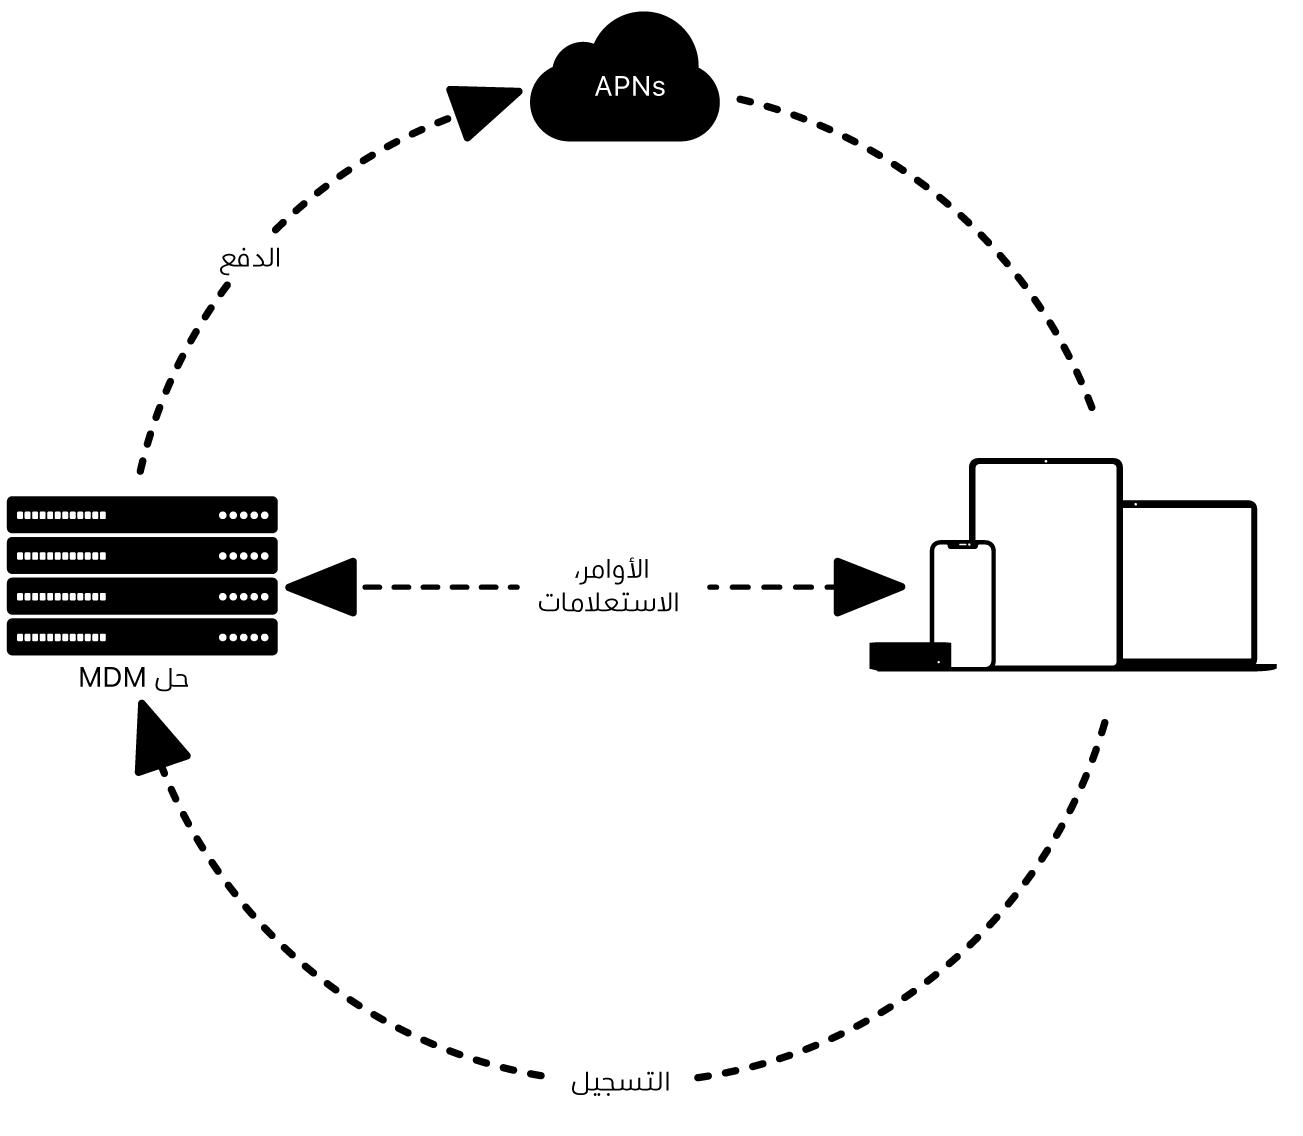 مخطط يوضح كيفية استخدام إشعارات APN مع حل MDM.